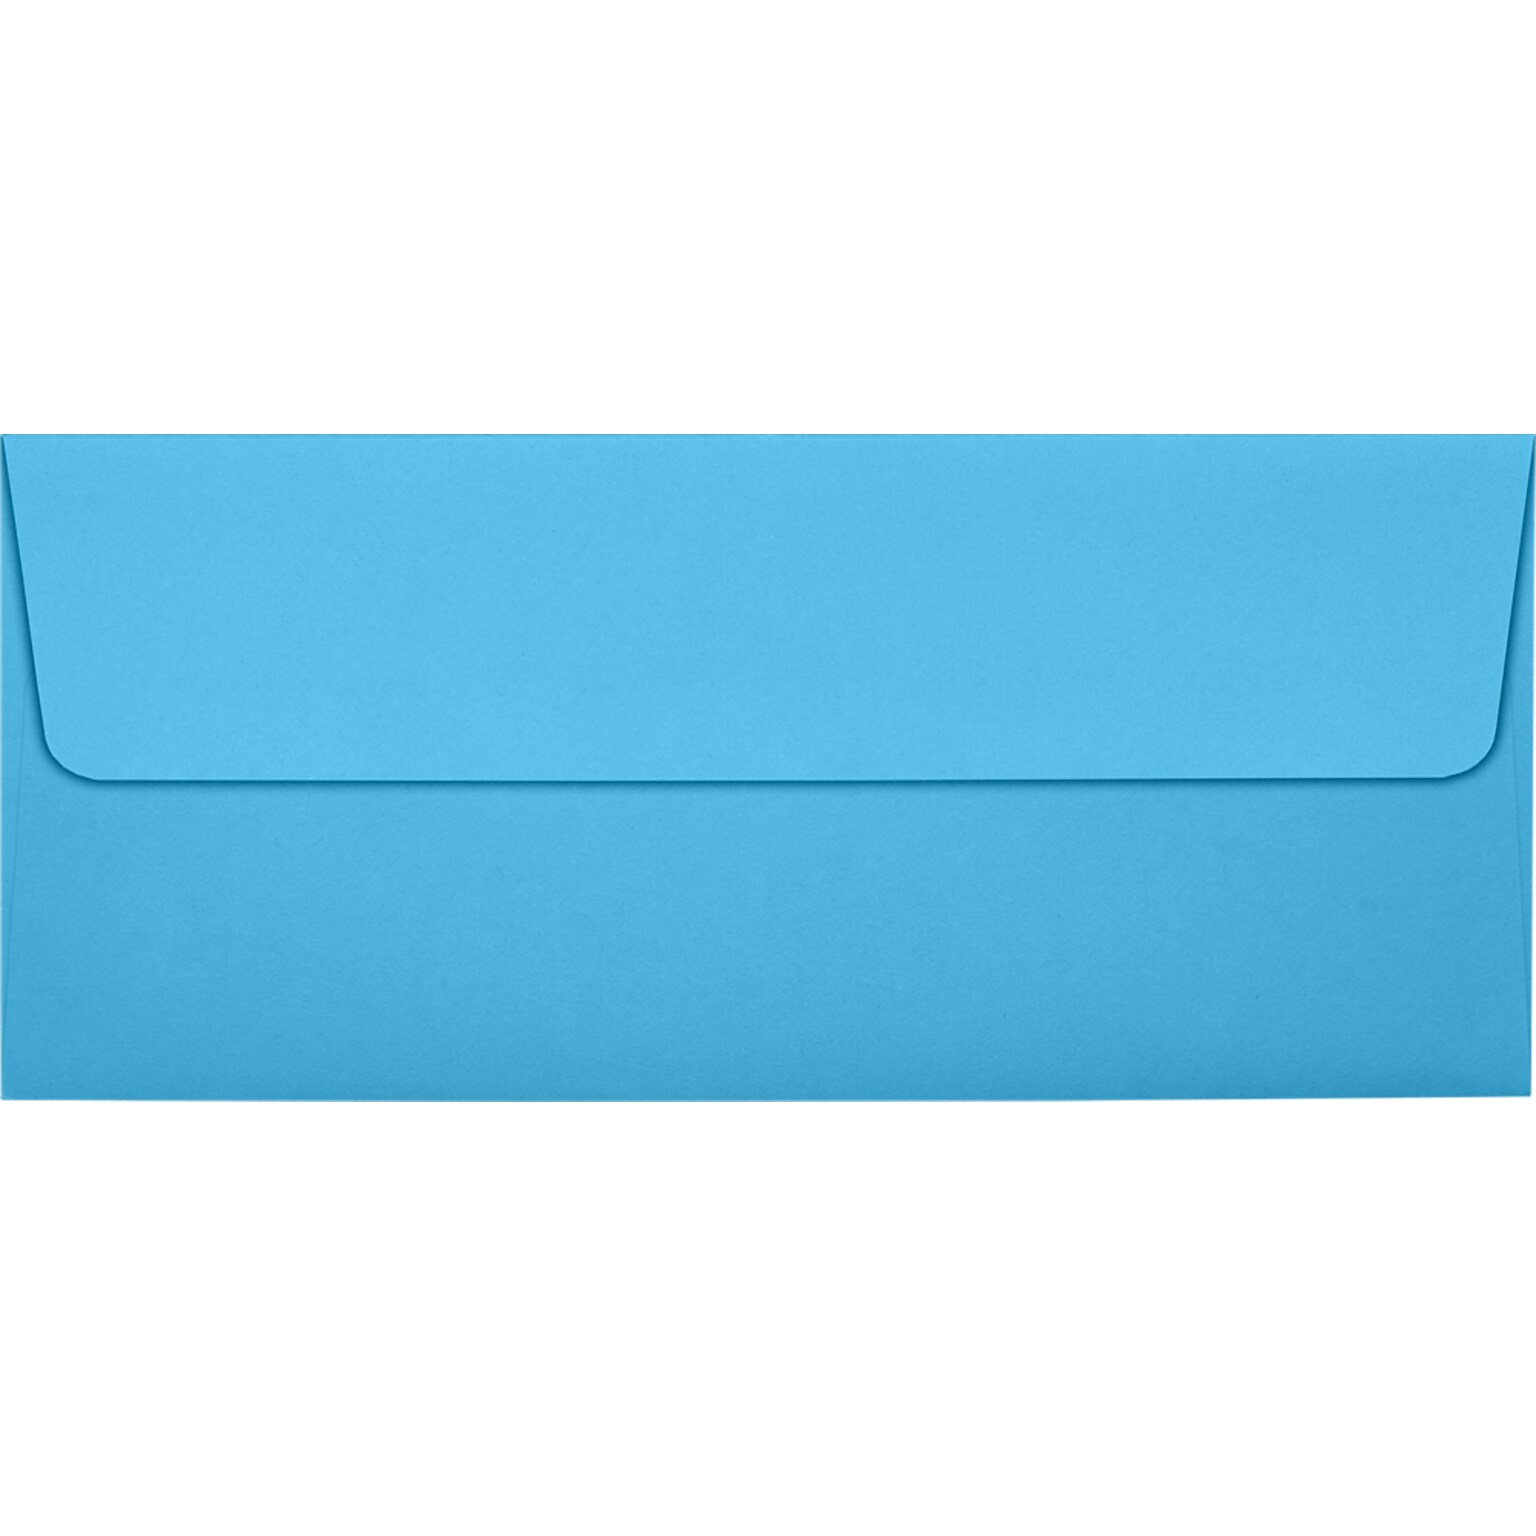 JAM Paper #10 Square Flap Envelopes, Peel & Press, 60lb, 4 1/8 x 9 1/2, Bright Blue, 50 Pack (5360-13-50)